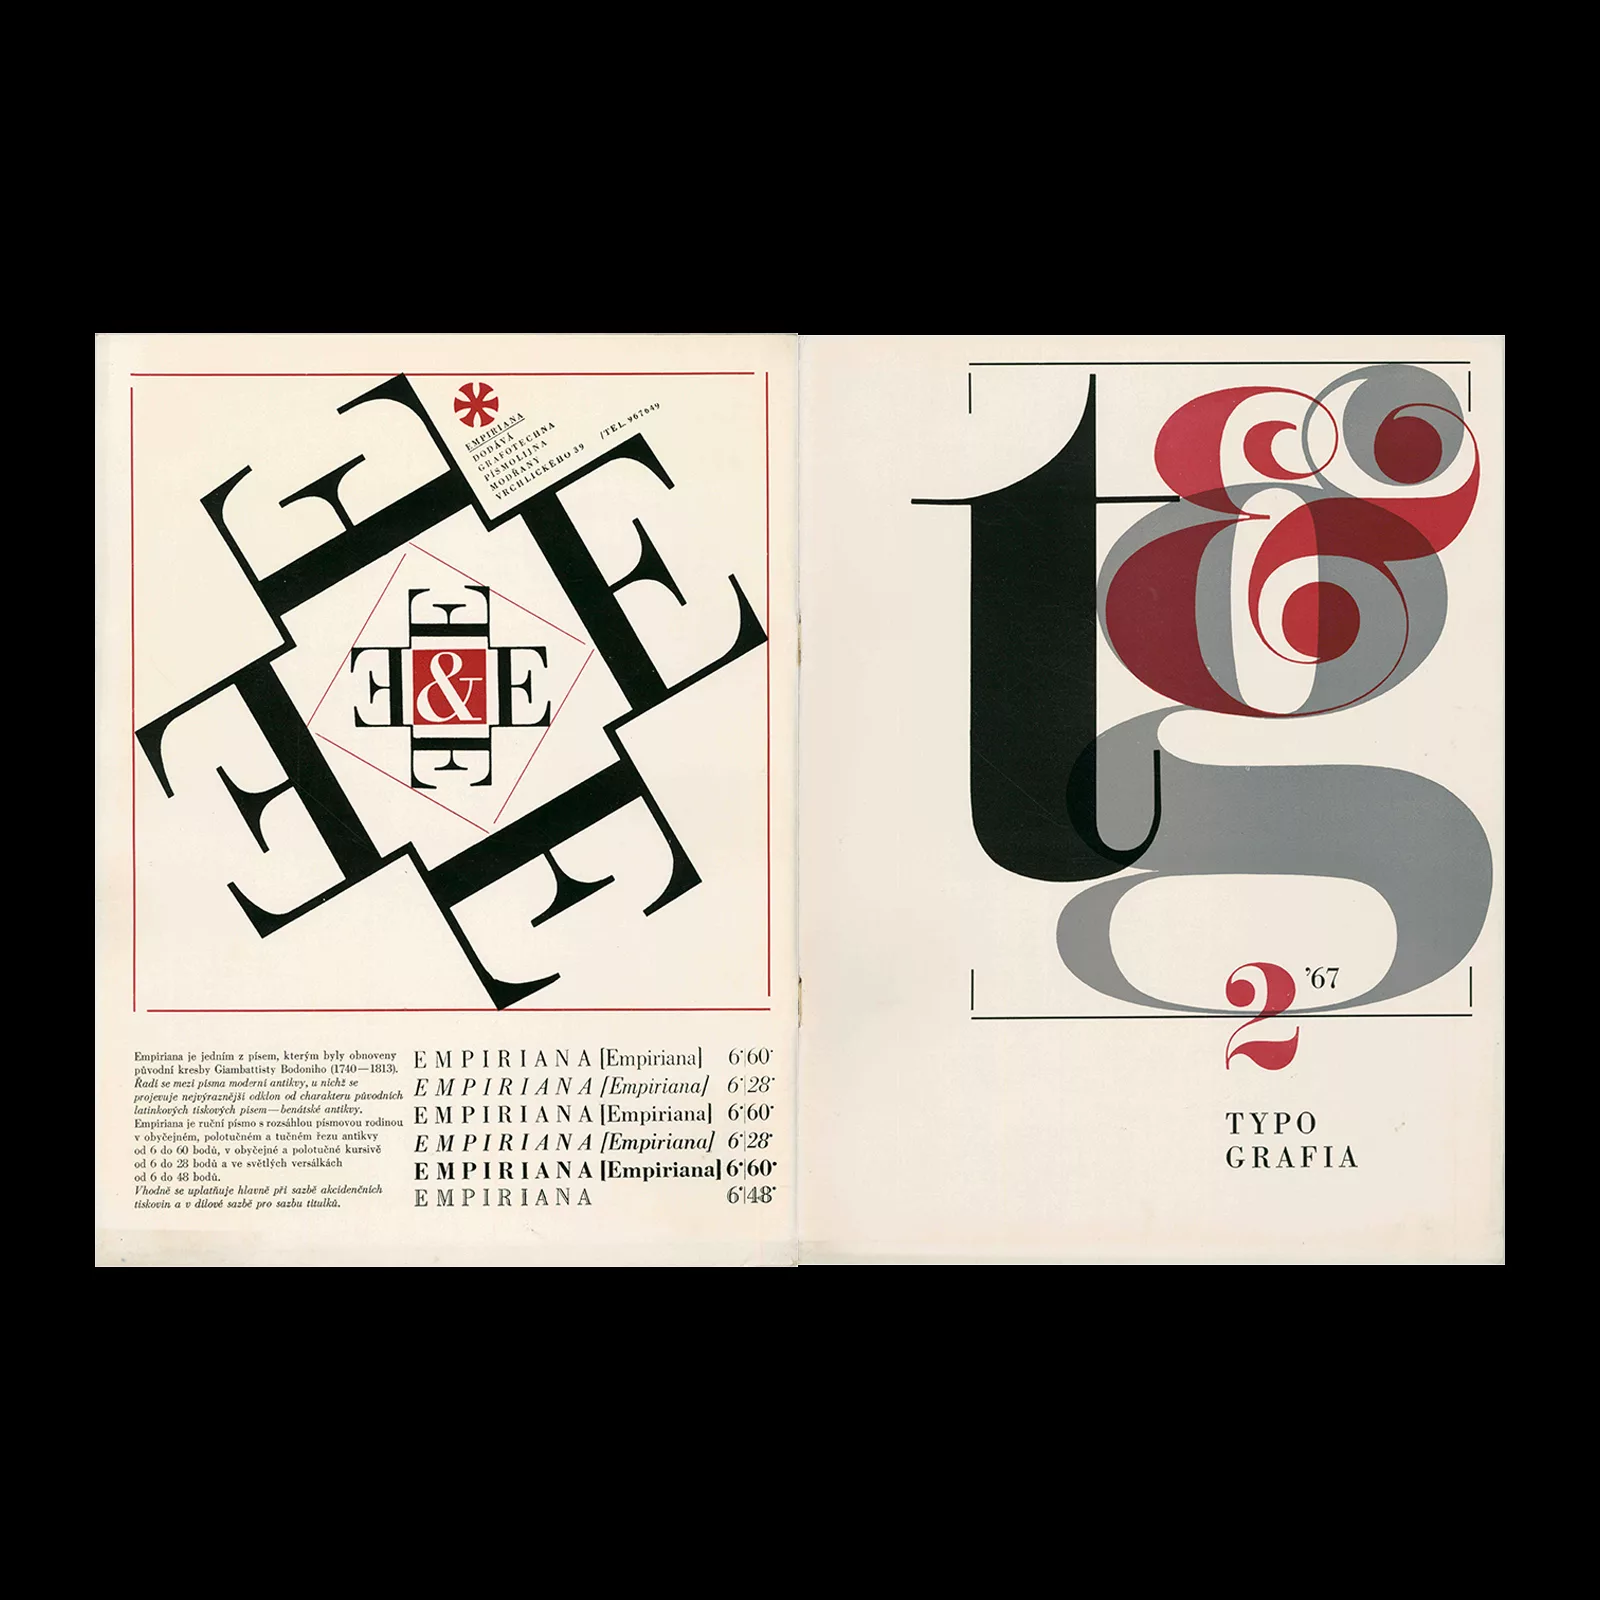 Typografia, ročník 70, 02, 1967. Cover design by Bohuslav Blažej